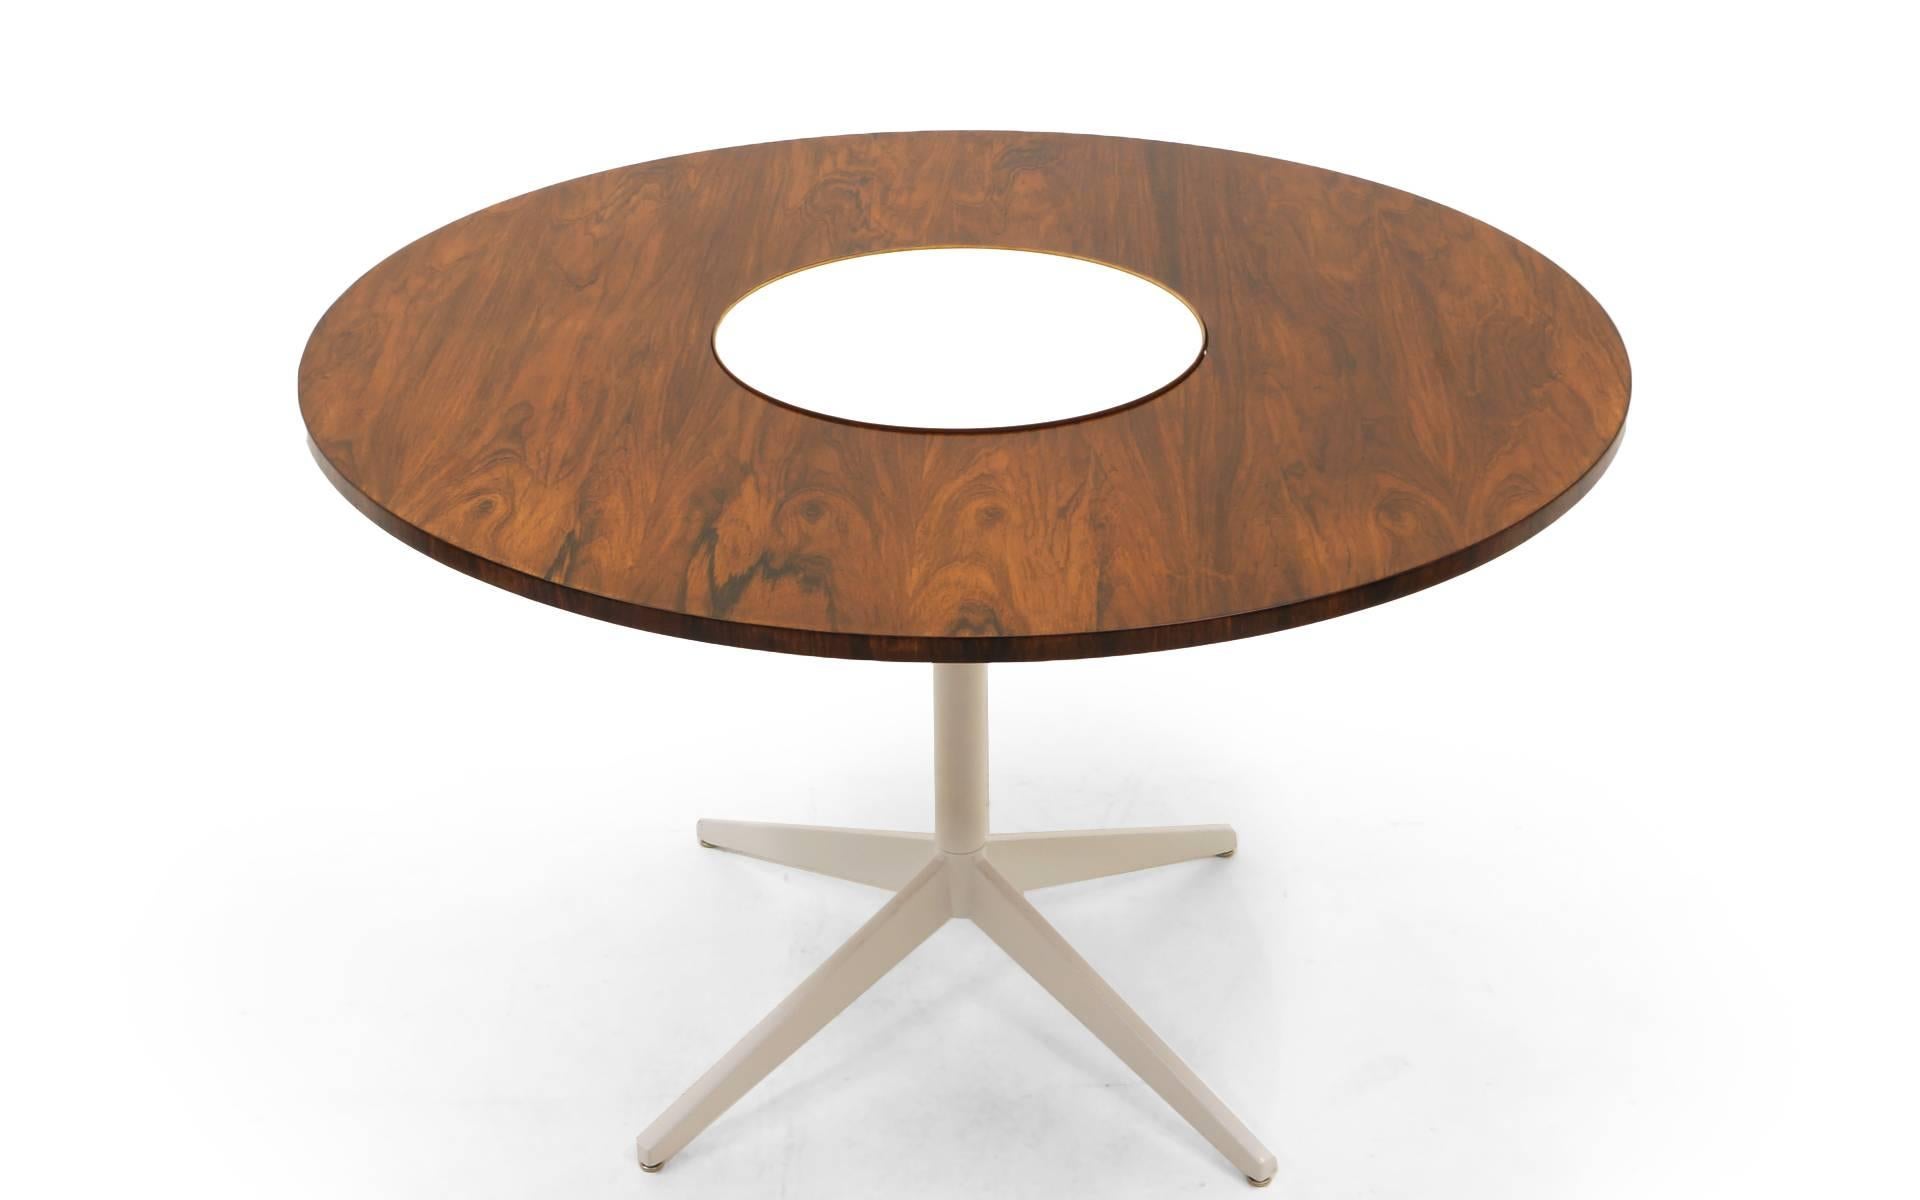 Früher, seltener Esstisch aus Palisanderholz, entworfen von George Nelson für Herman Miller. Die mittlere weiße Laminatfläche ist eine Lazy Susan, die sich in einer kreisförmigen Bewegung dreht. Dies ist das einzige Exemplar, das wir je mit einer